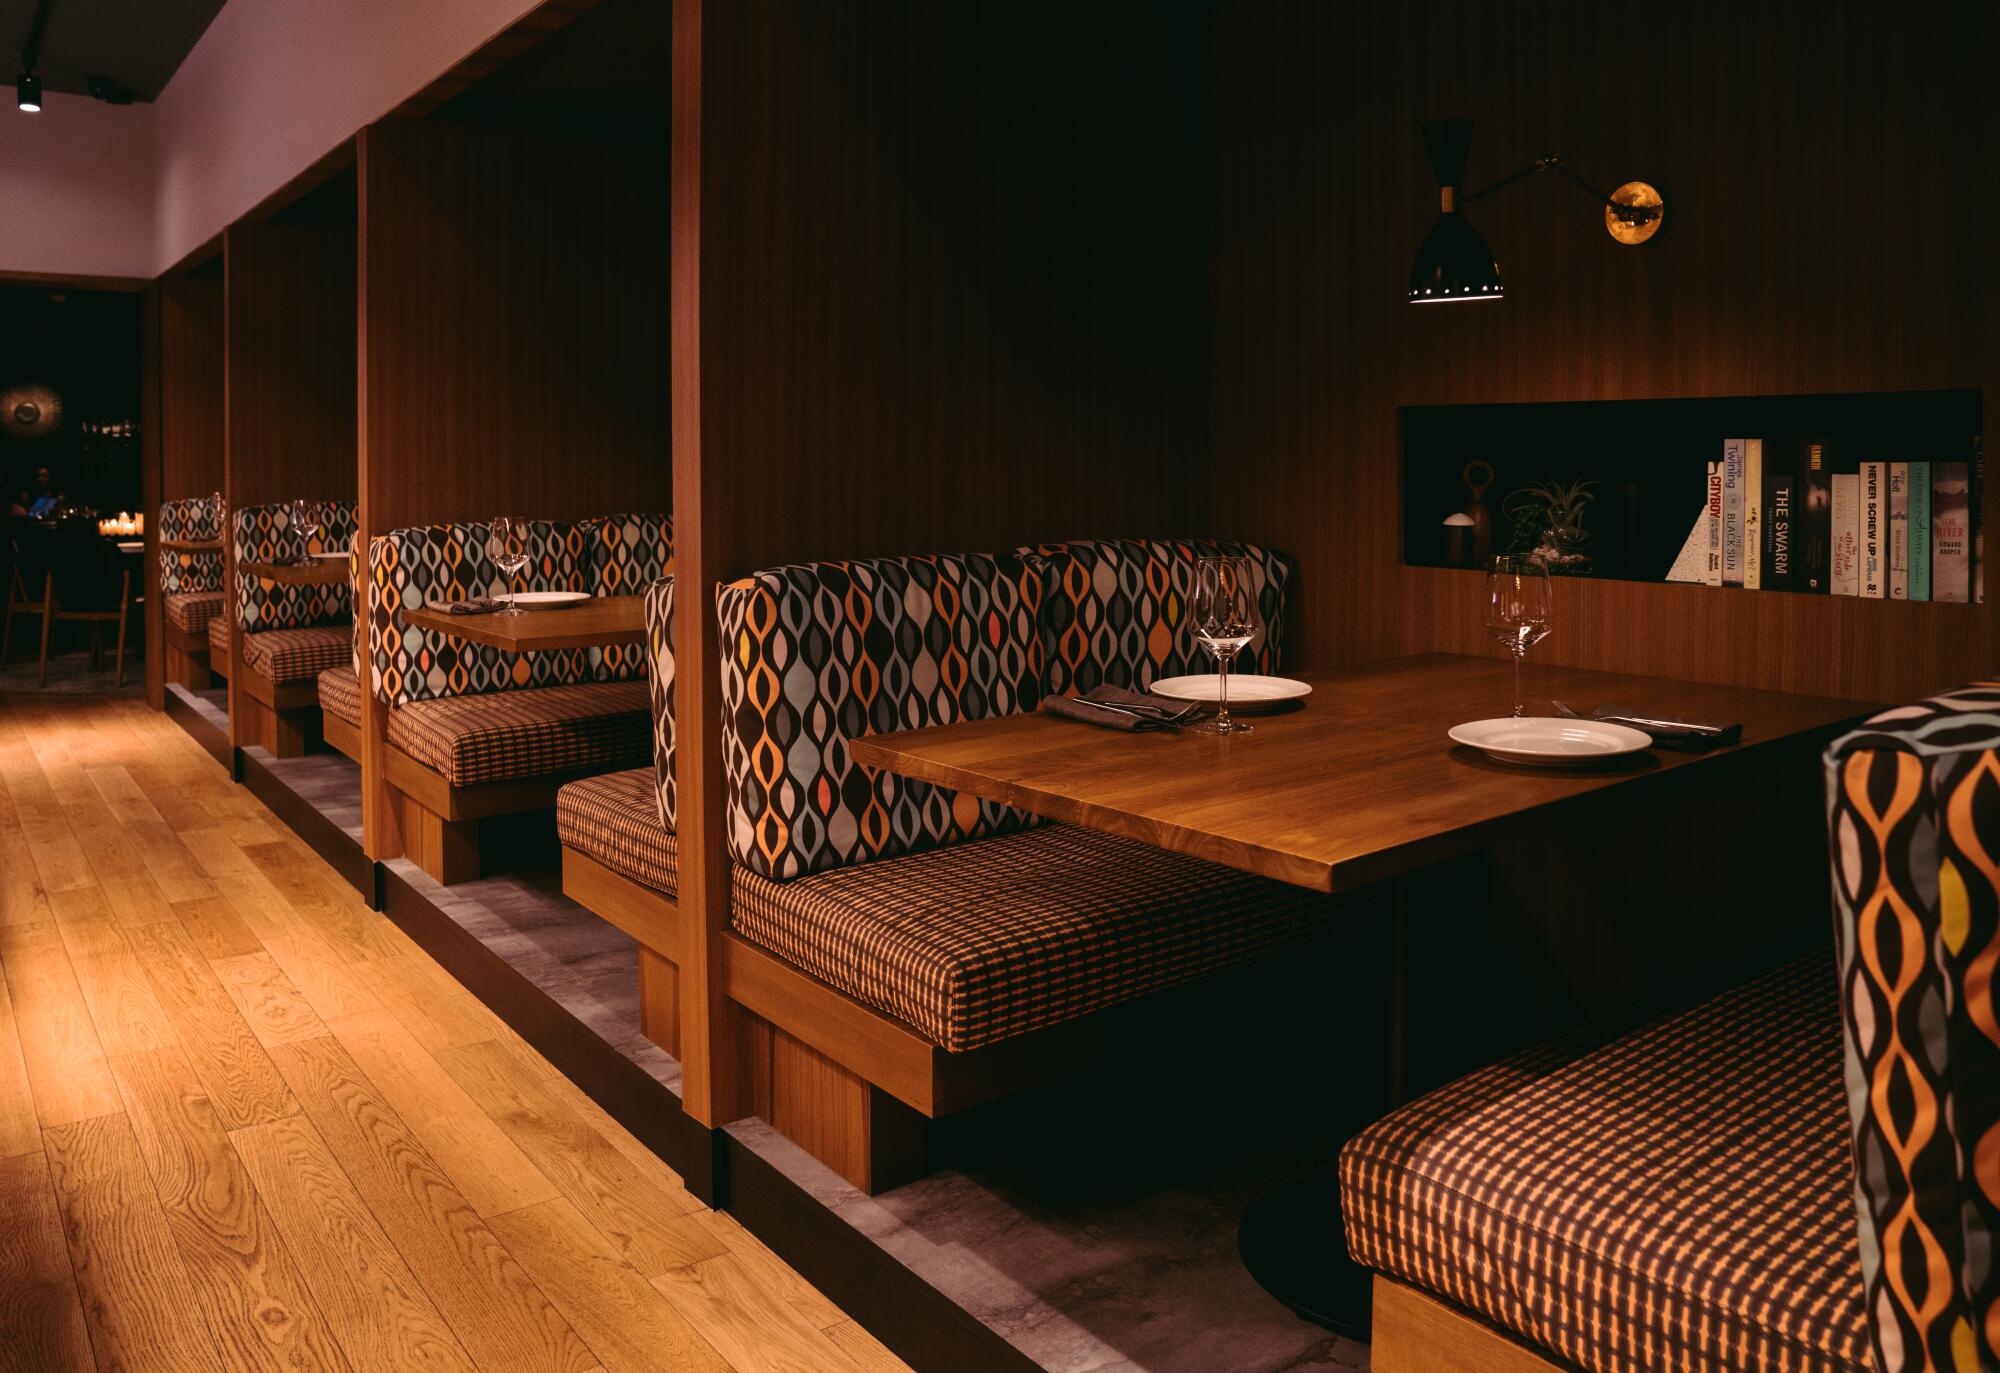 Interior and seating areas of California Republic restaurant.